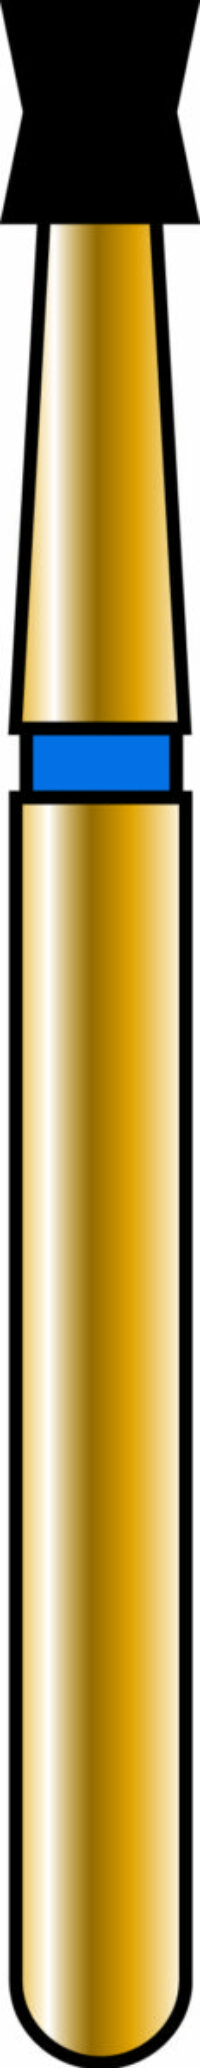 Double Cone 18-2mm Gold Diamond Bur - Coarse Grit